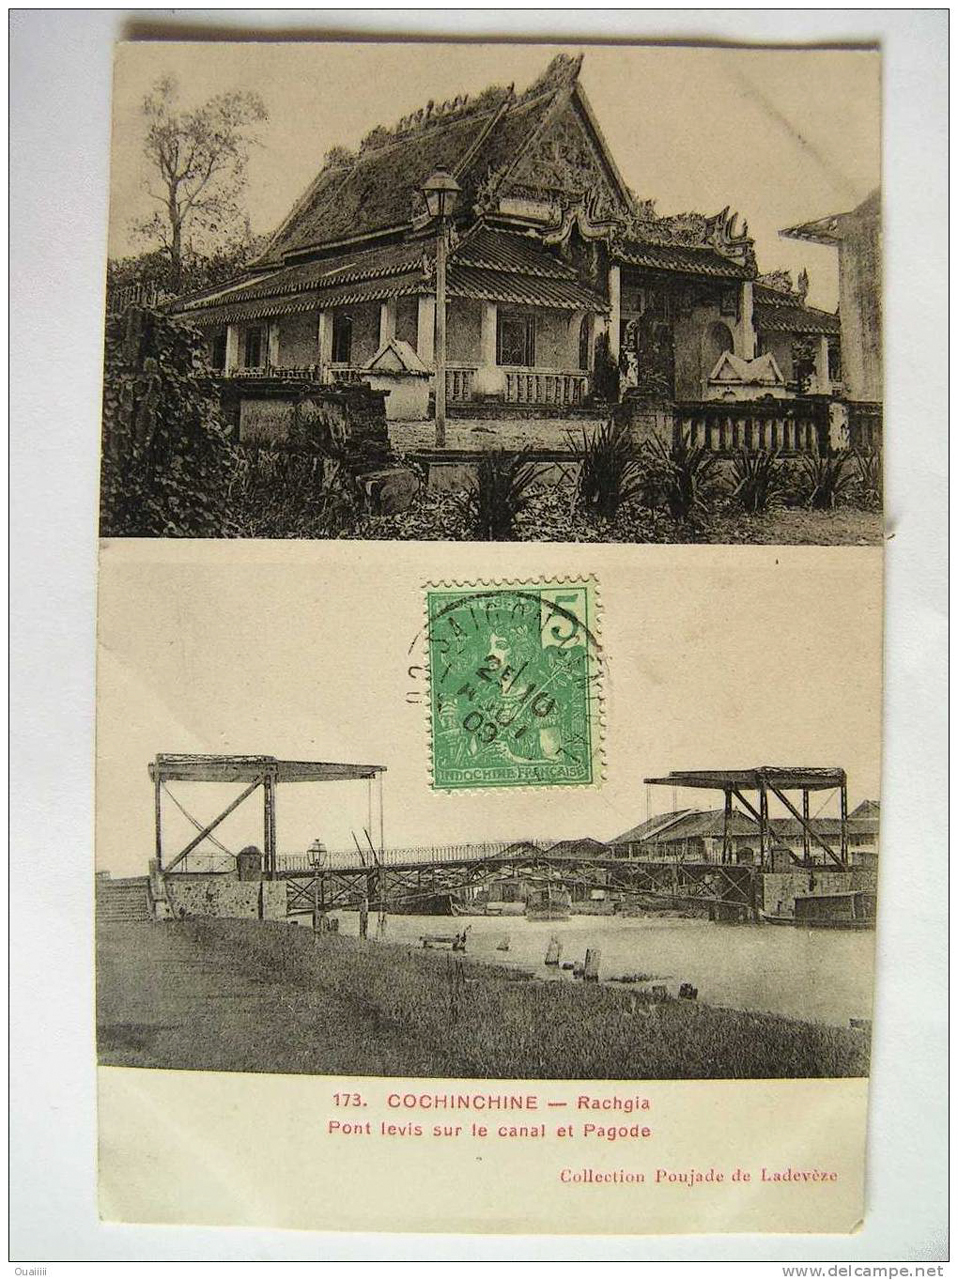 Chùa Phật Lớn và kênh Rạch Giá trên một tấm poster năm 1911